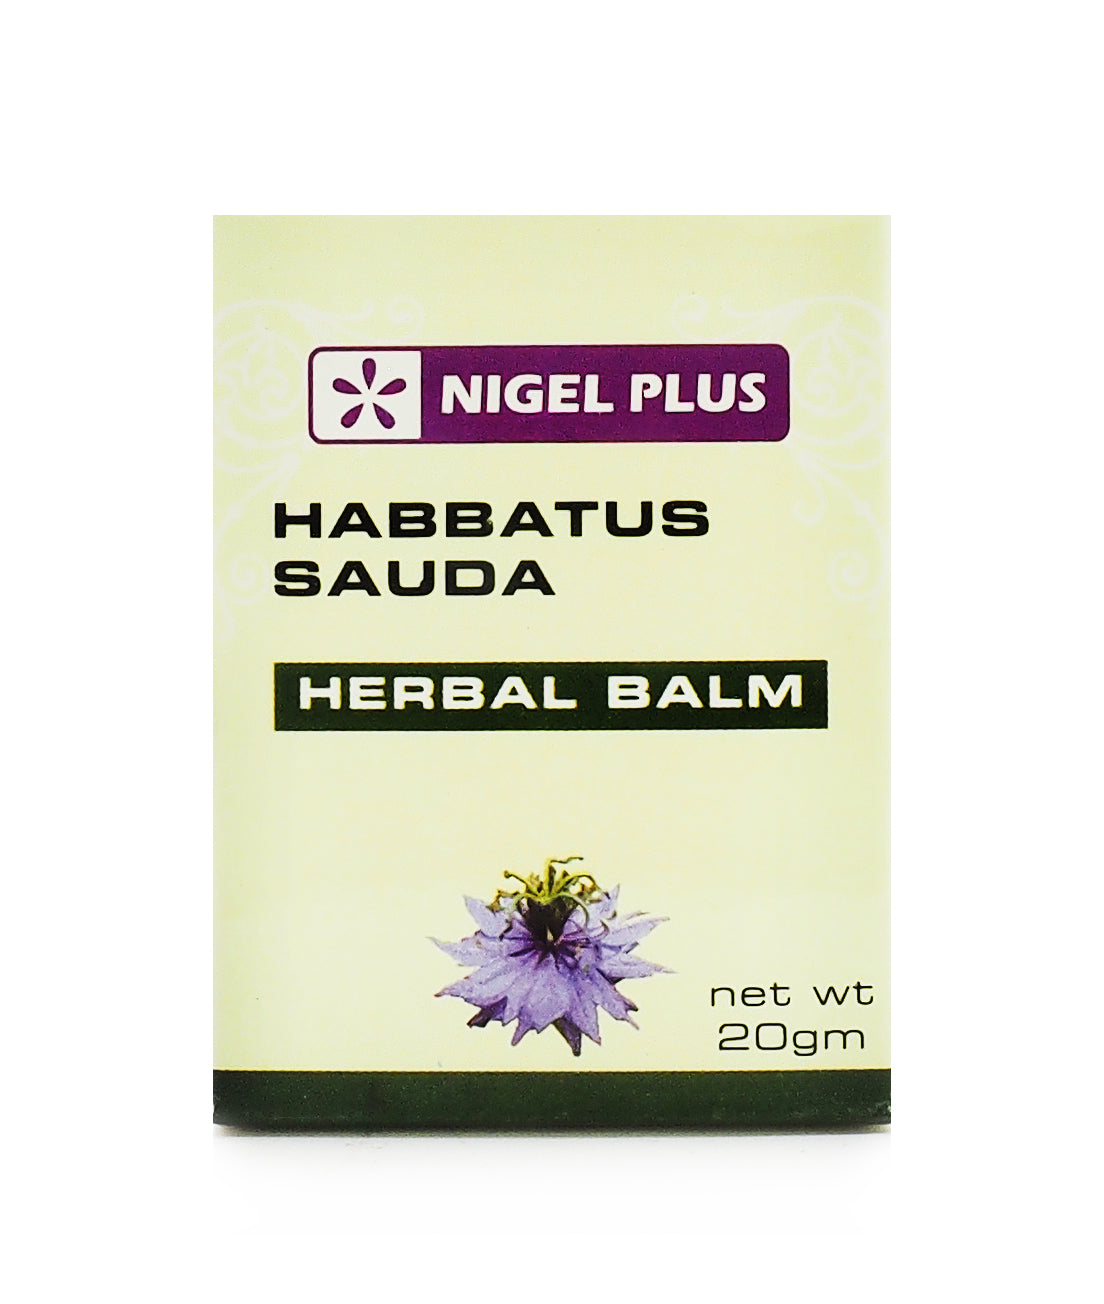 Nigel Plus Habbatus Sauda Herbal Balm 20g